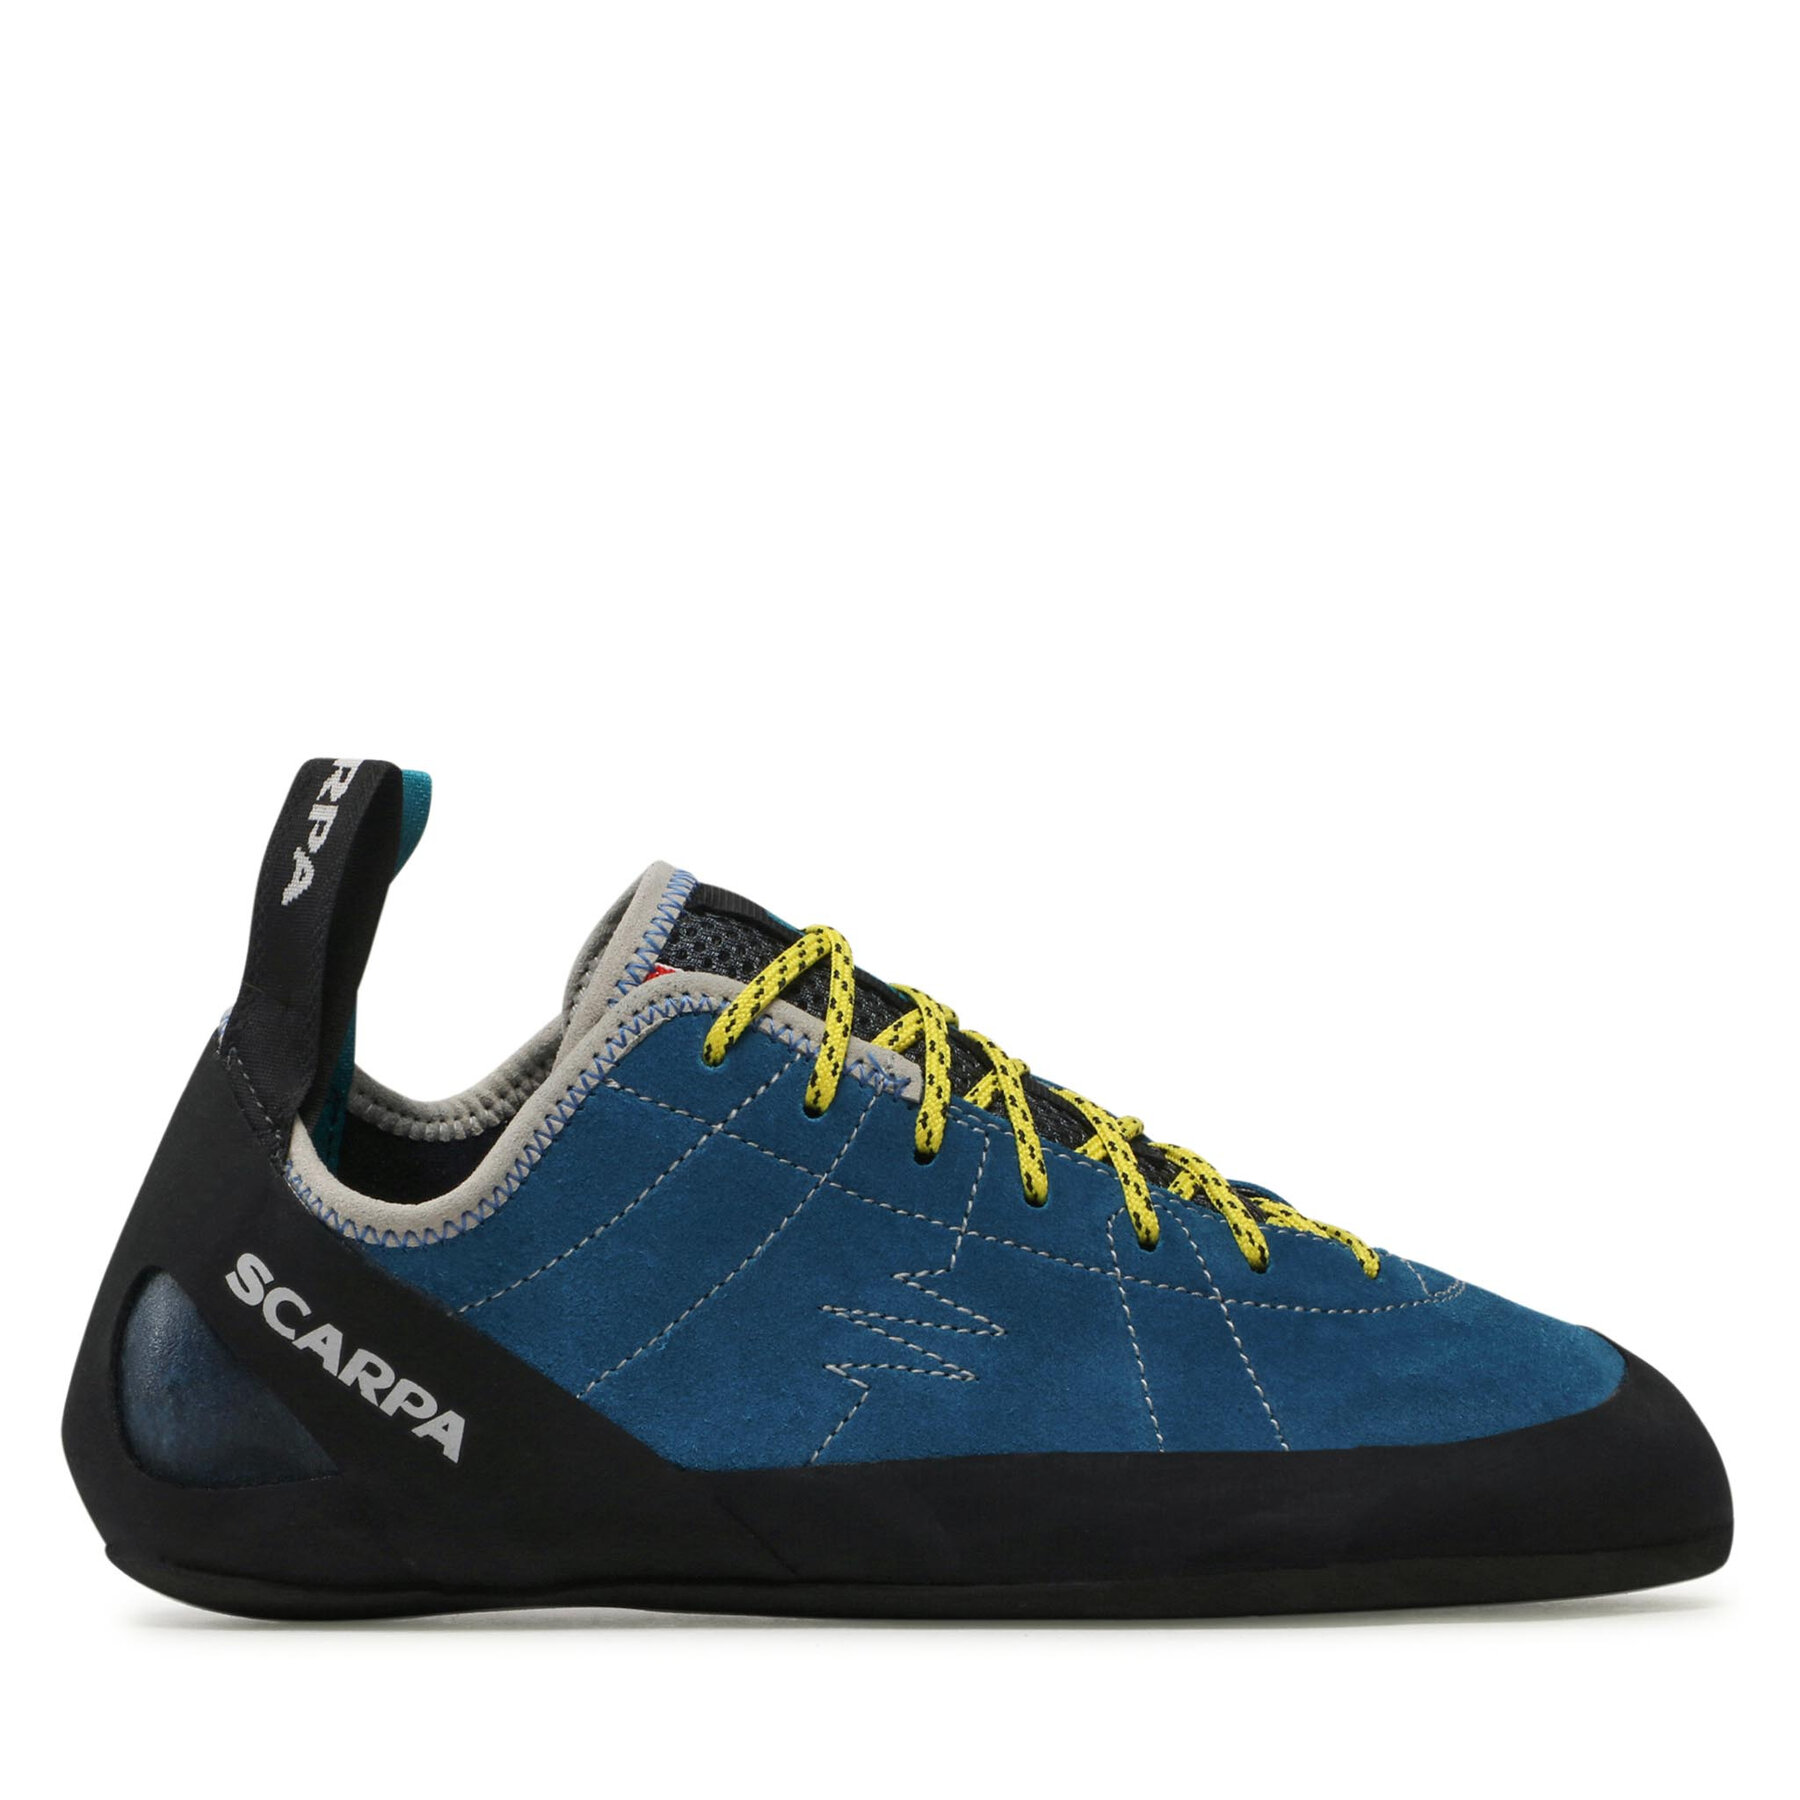 Čevlji Scarpa Helix 70005-001 Hyper Blue